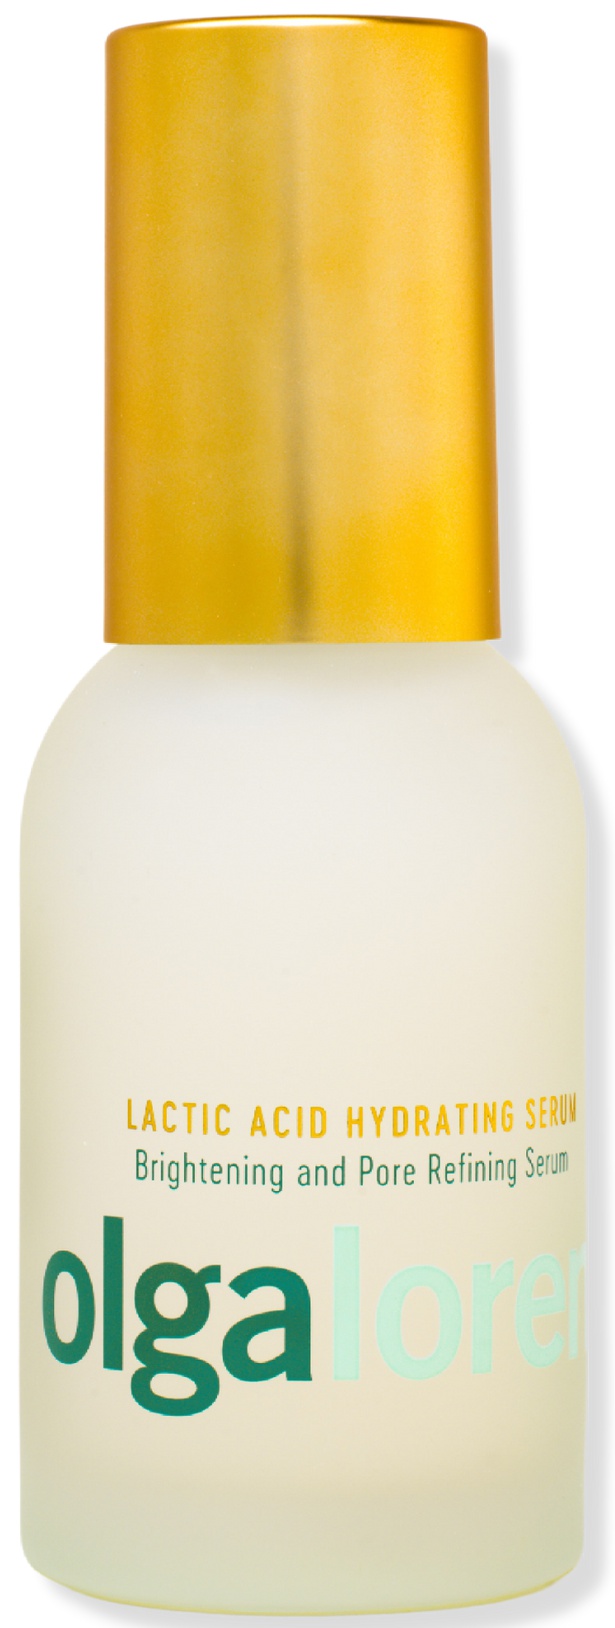 Olga Lorencin Skin Care Lactic Acid Hydrating Serum